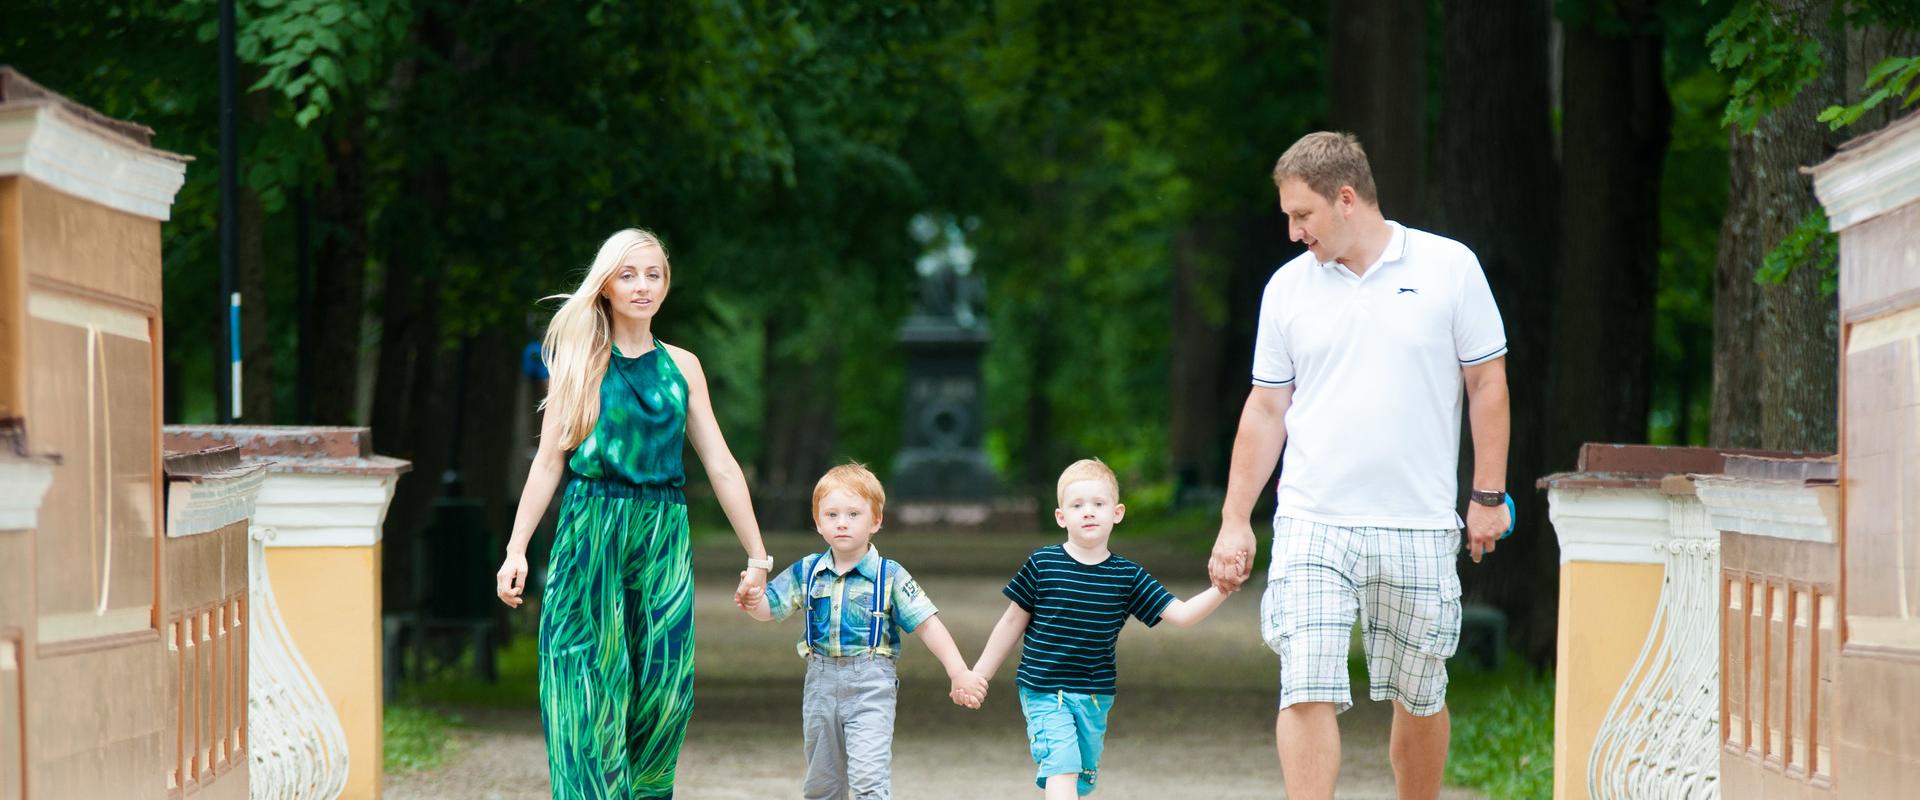 Toomemäen puisto ja perhe kävelemässä Enkelinsillalla